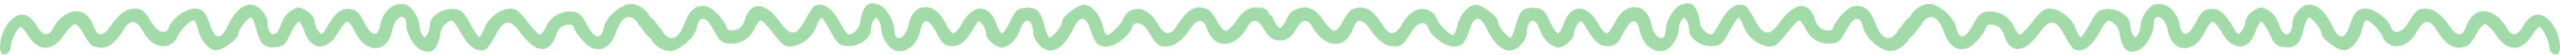 wave-divider-green